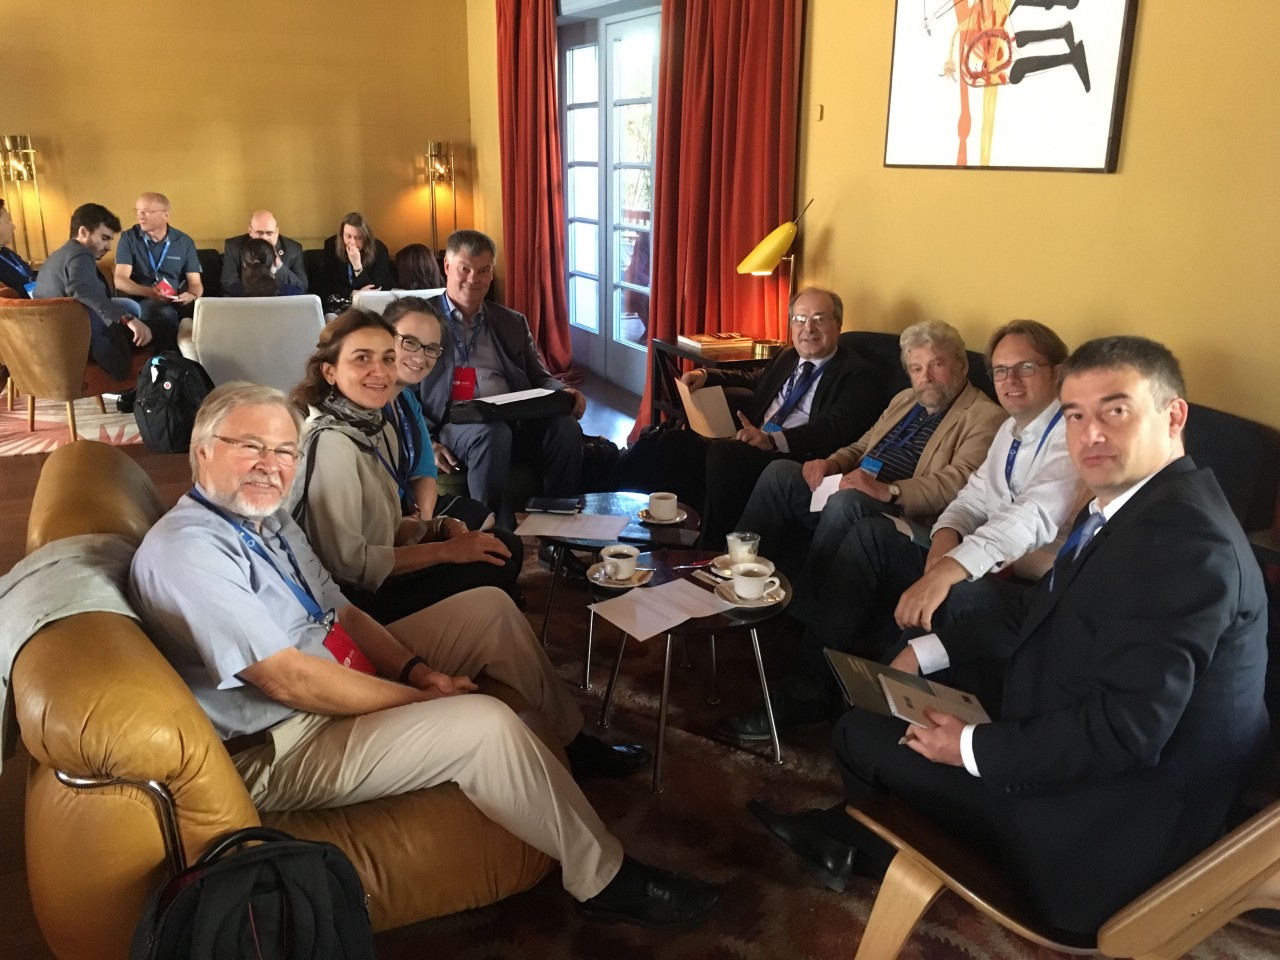 Workshop 10 participants at EuroDIG 2018